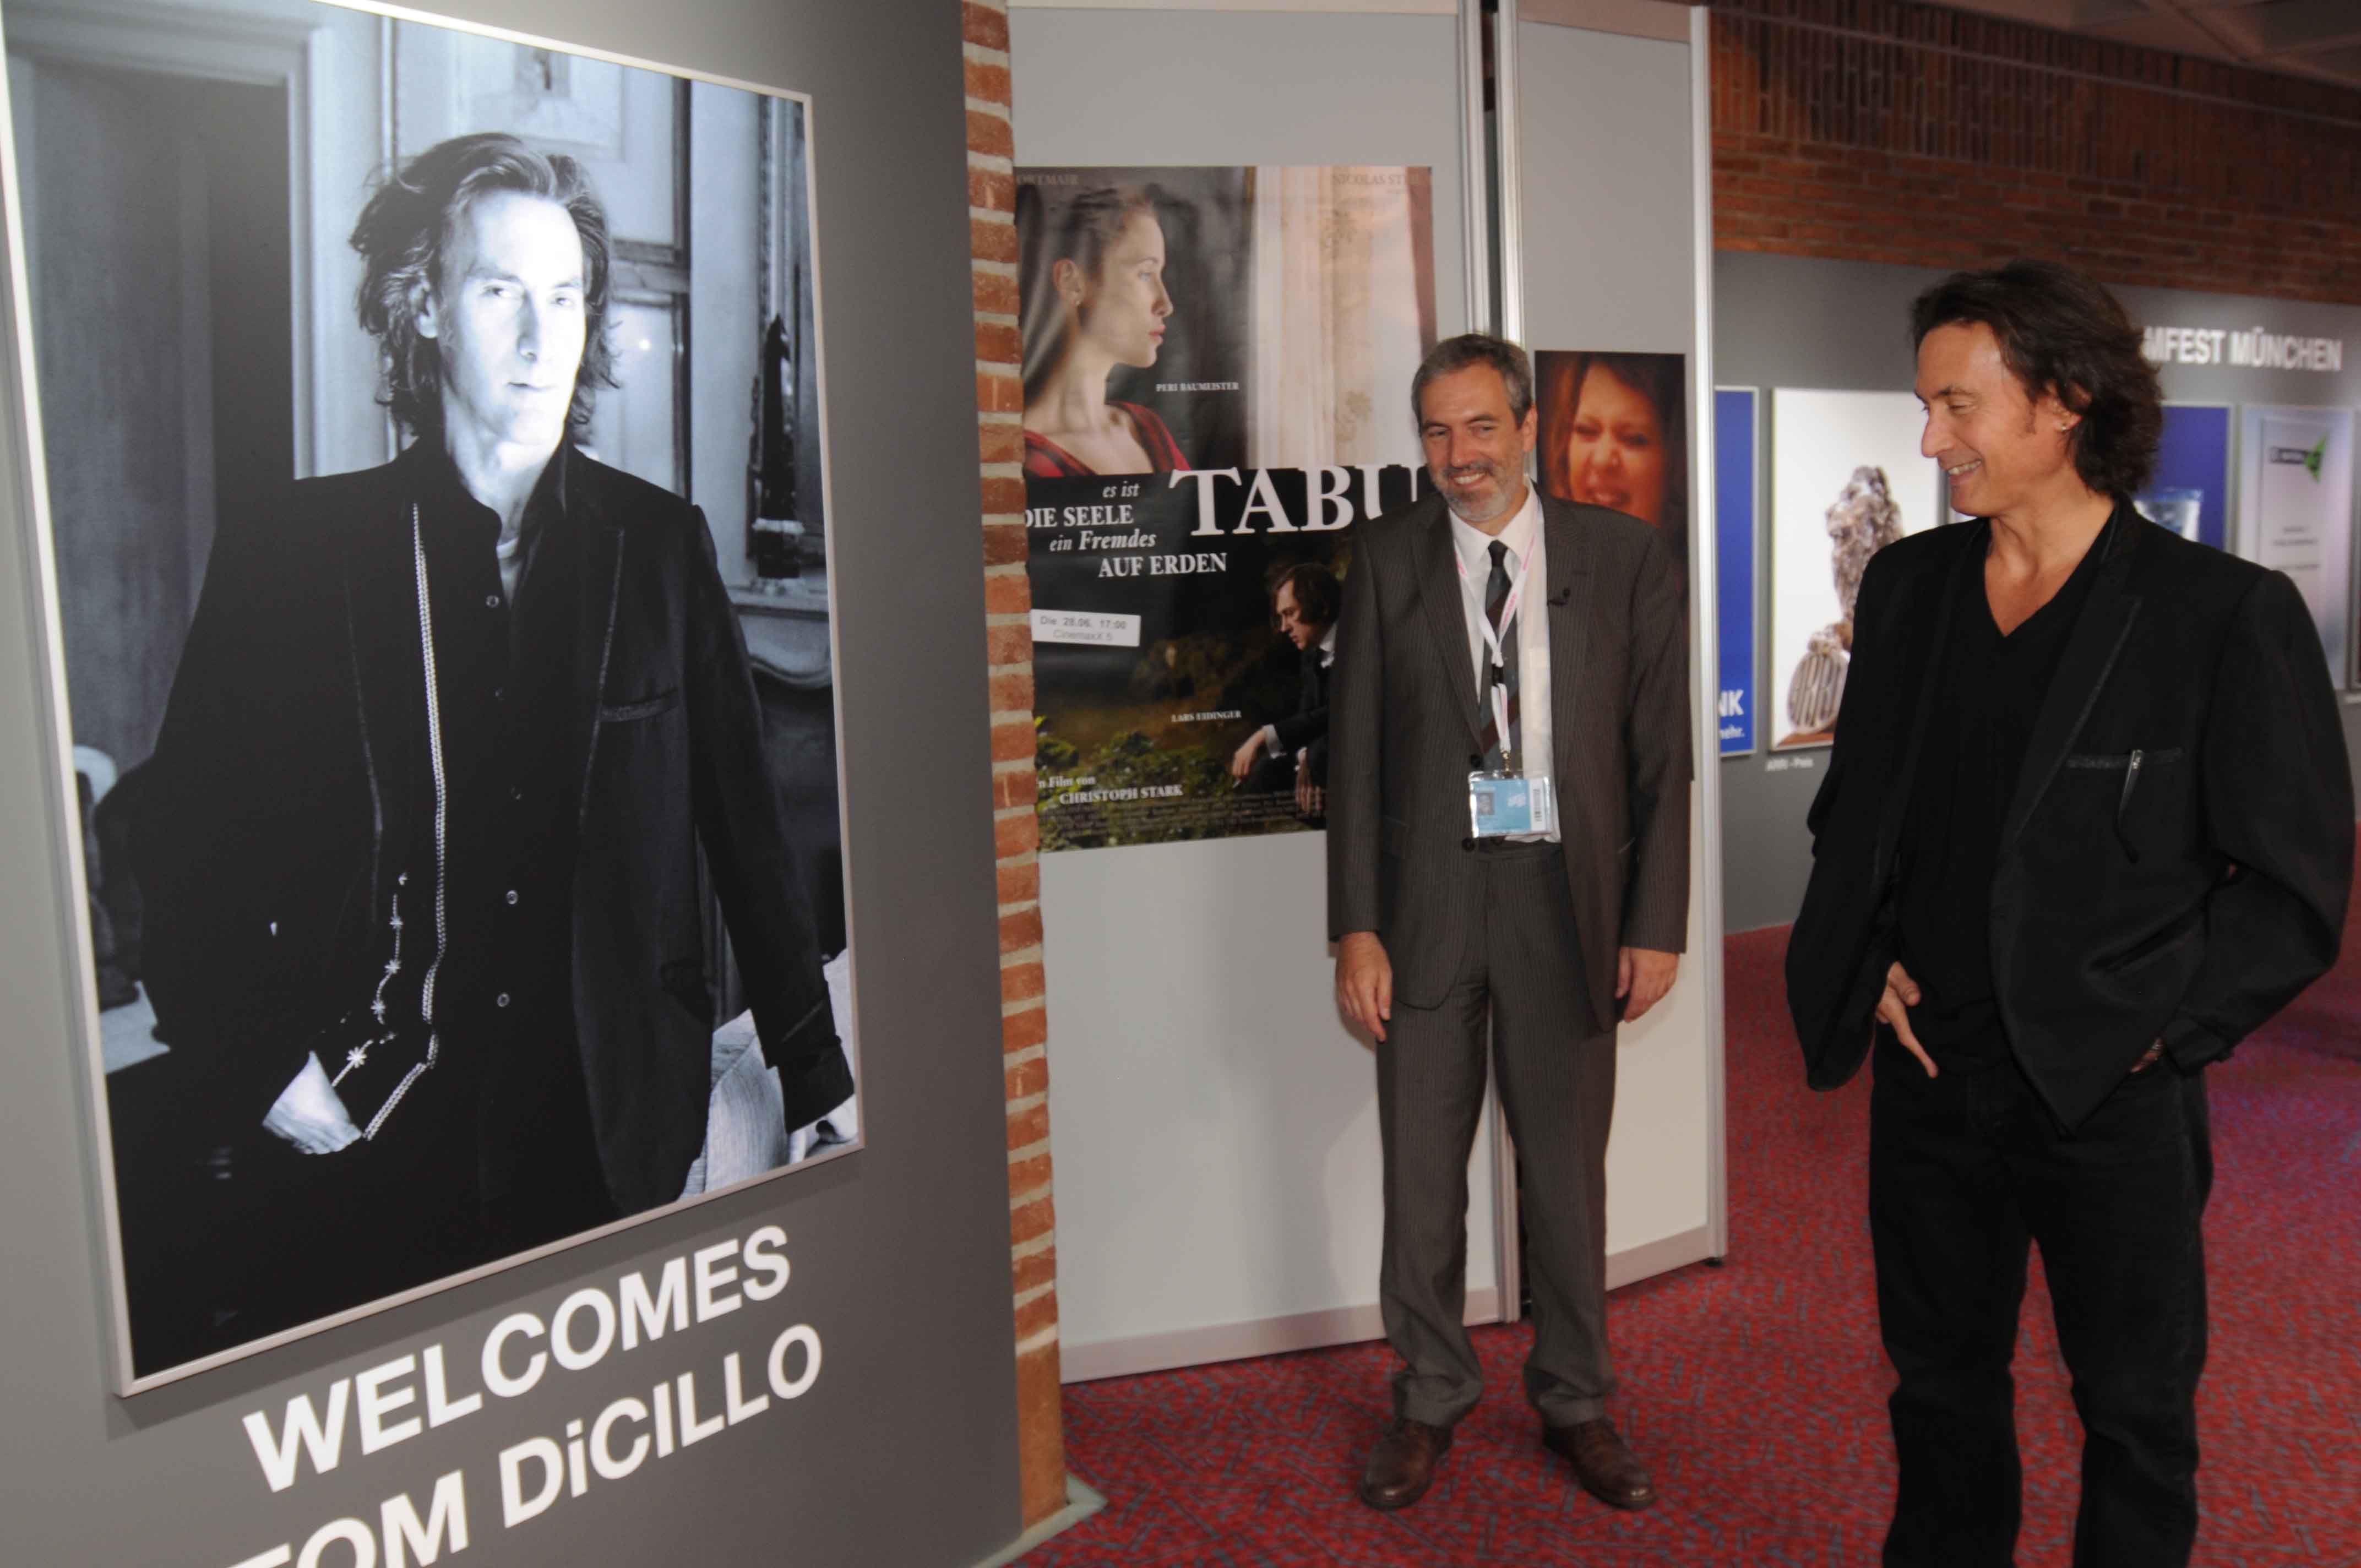 Tom DiCillo and Andreas Stohl, director of the Munich Film Festival, 2011 retrospective of DiCillo's films.